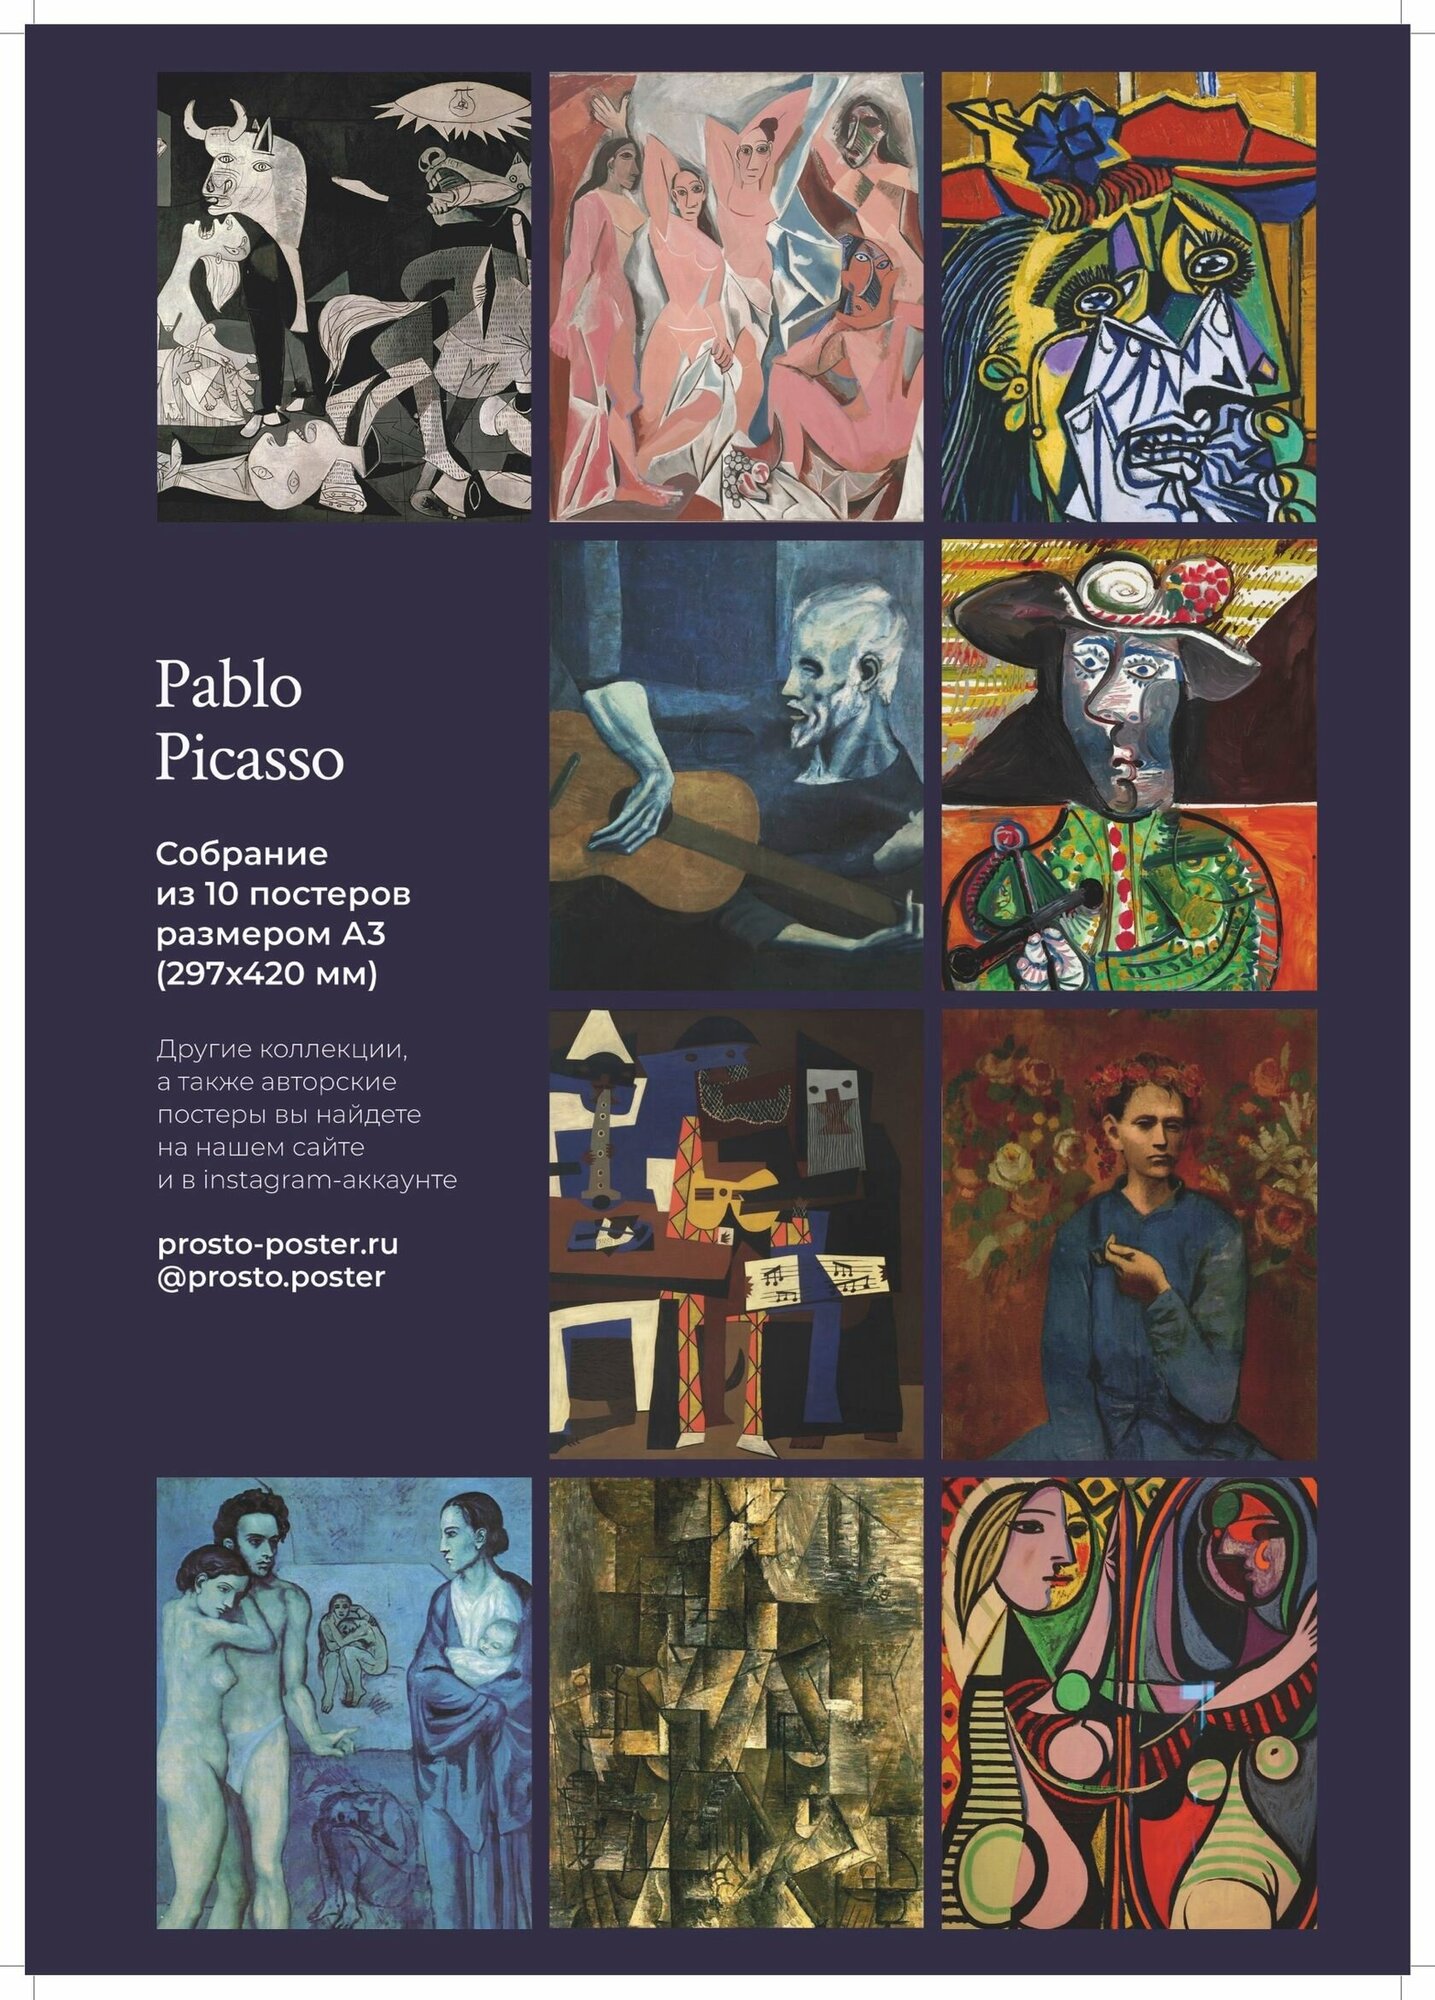 Пабло Пикассо: набор из 10 постеров с лучшими картинами